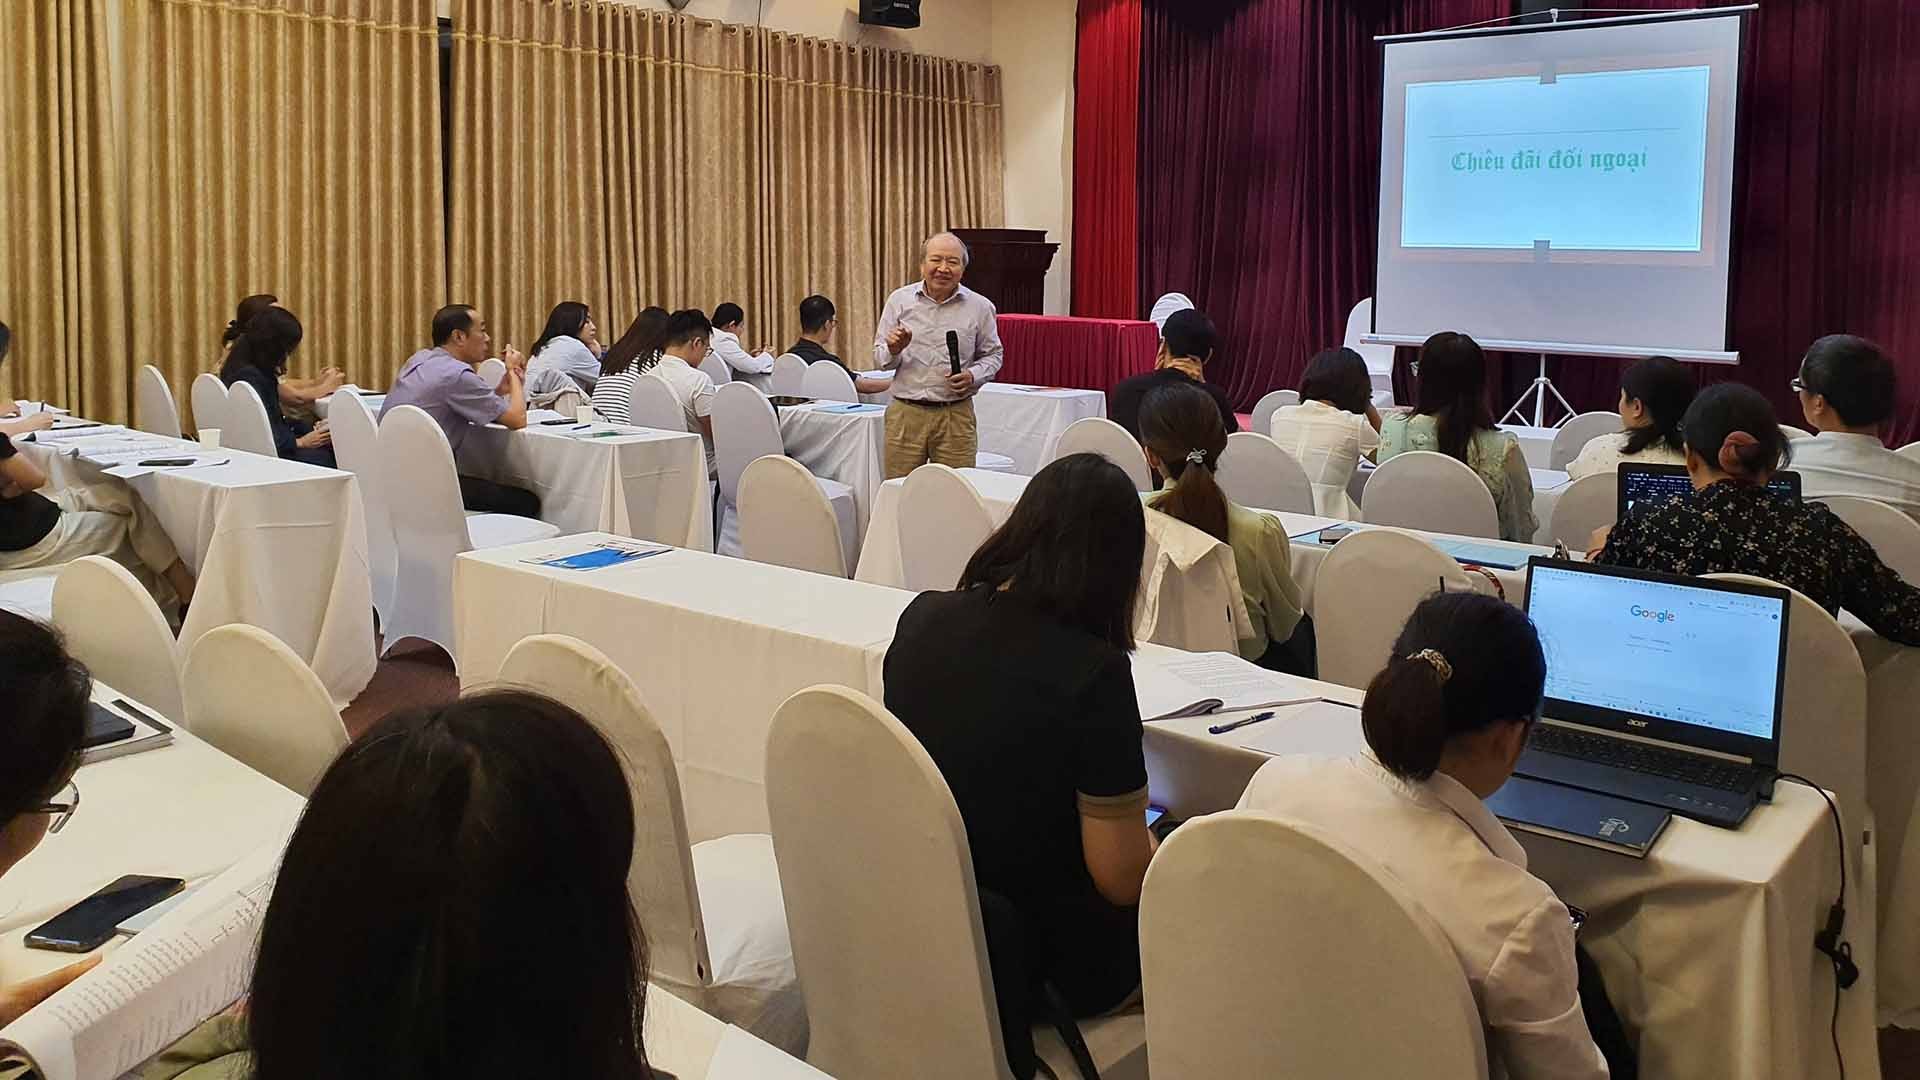 PGS.TS. Dương Văn Quảng, nguyên Đại sứ Việt Nam tại Singapore giảng bài tại khóa bồi dưỡng.